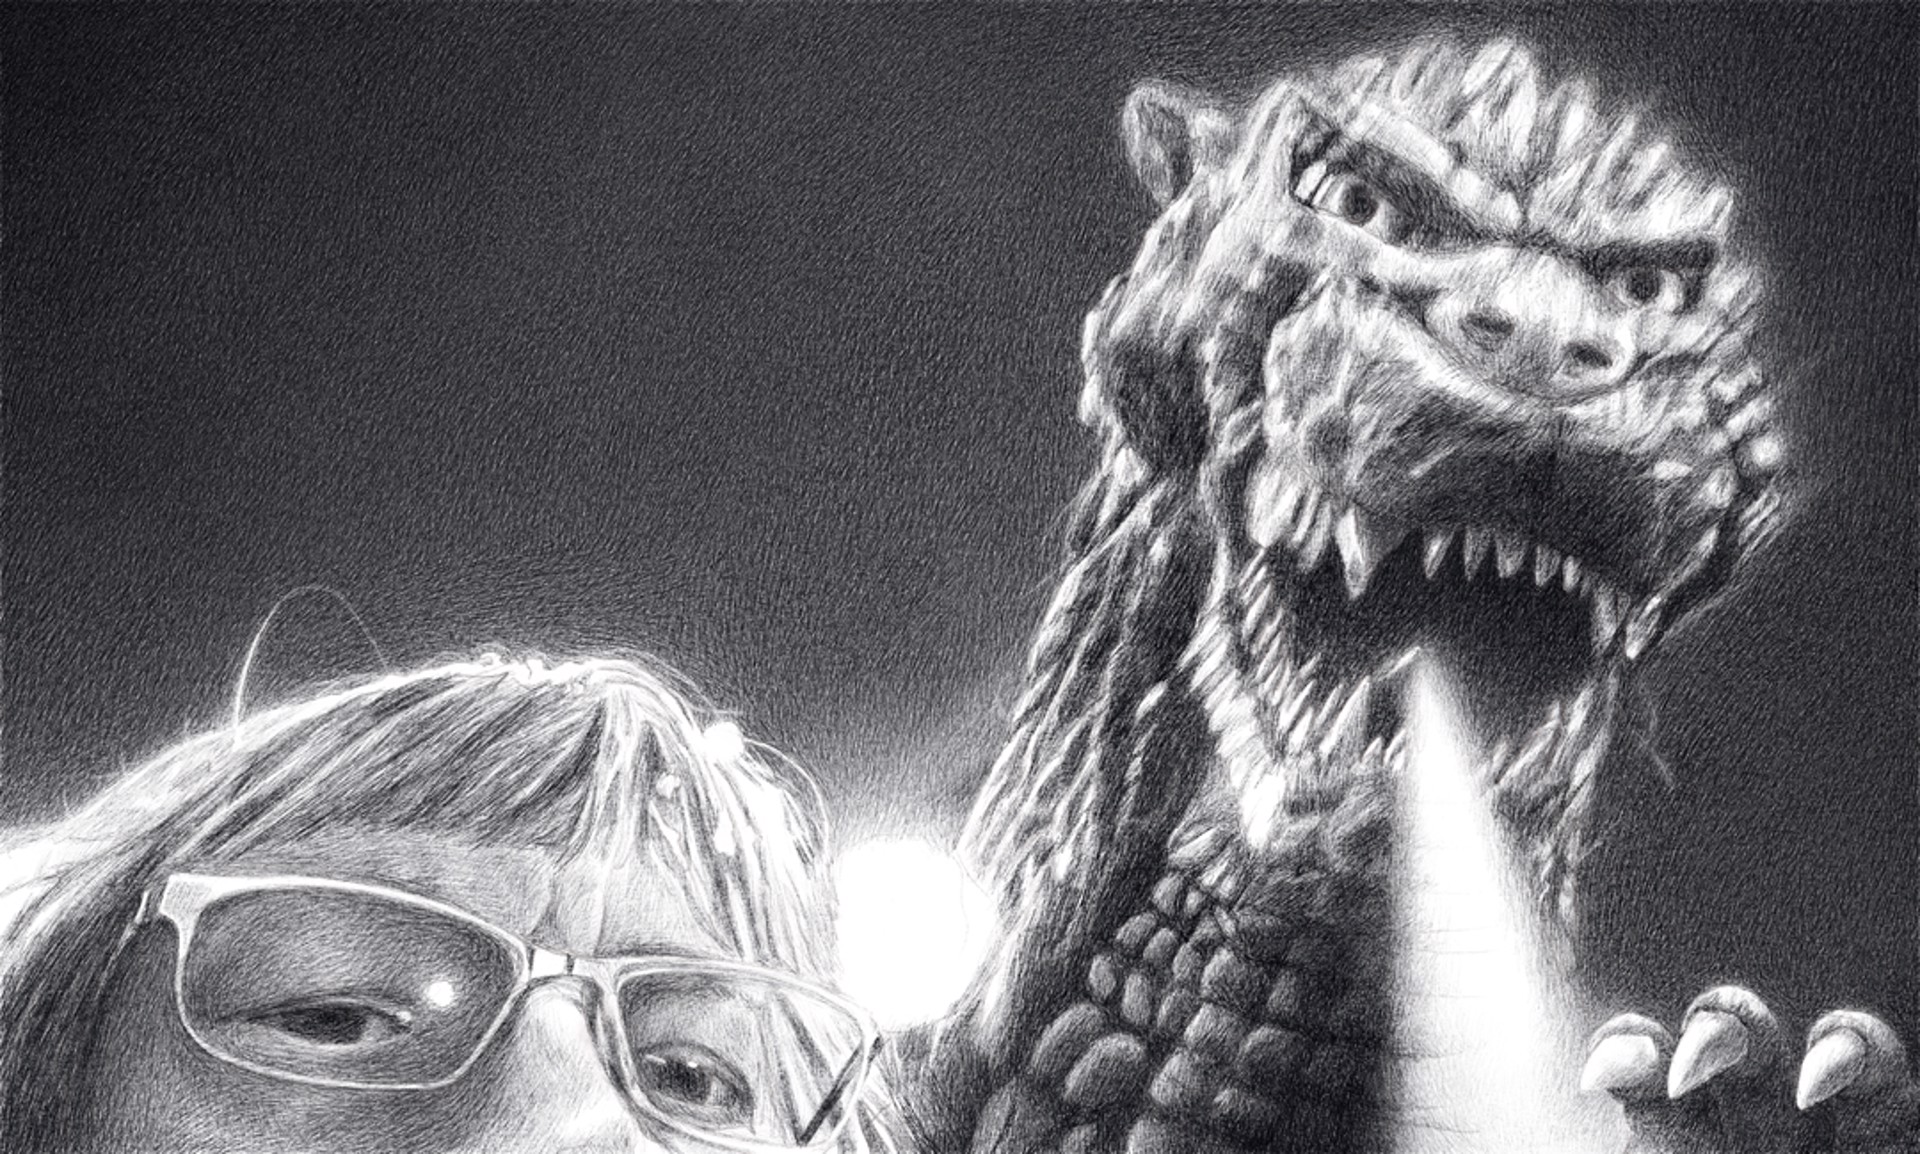 Selfie with Godzilla by Neva Mikulicz